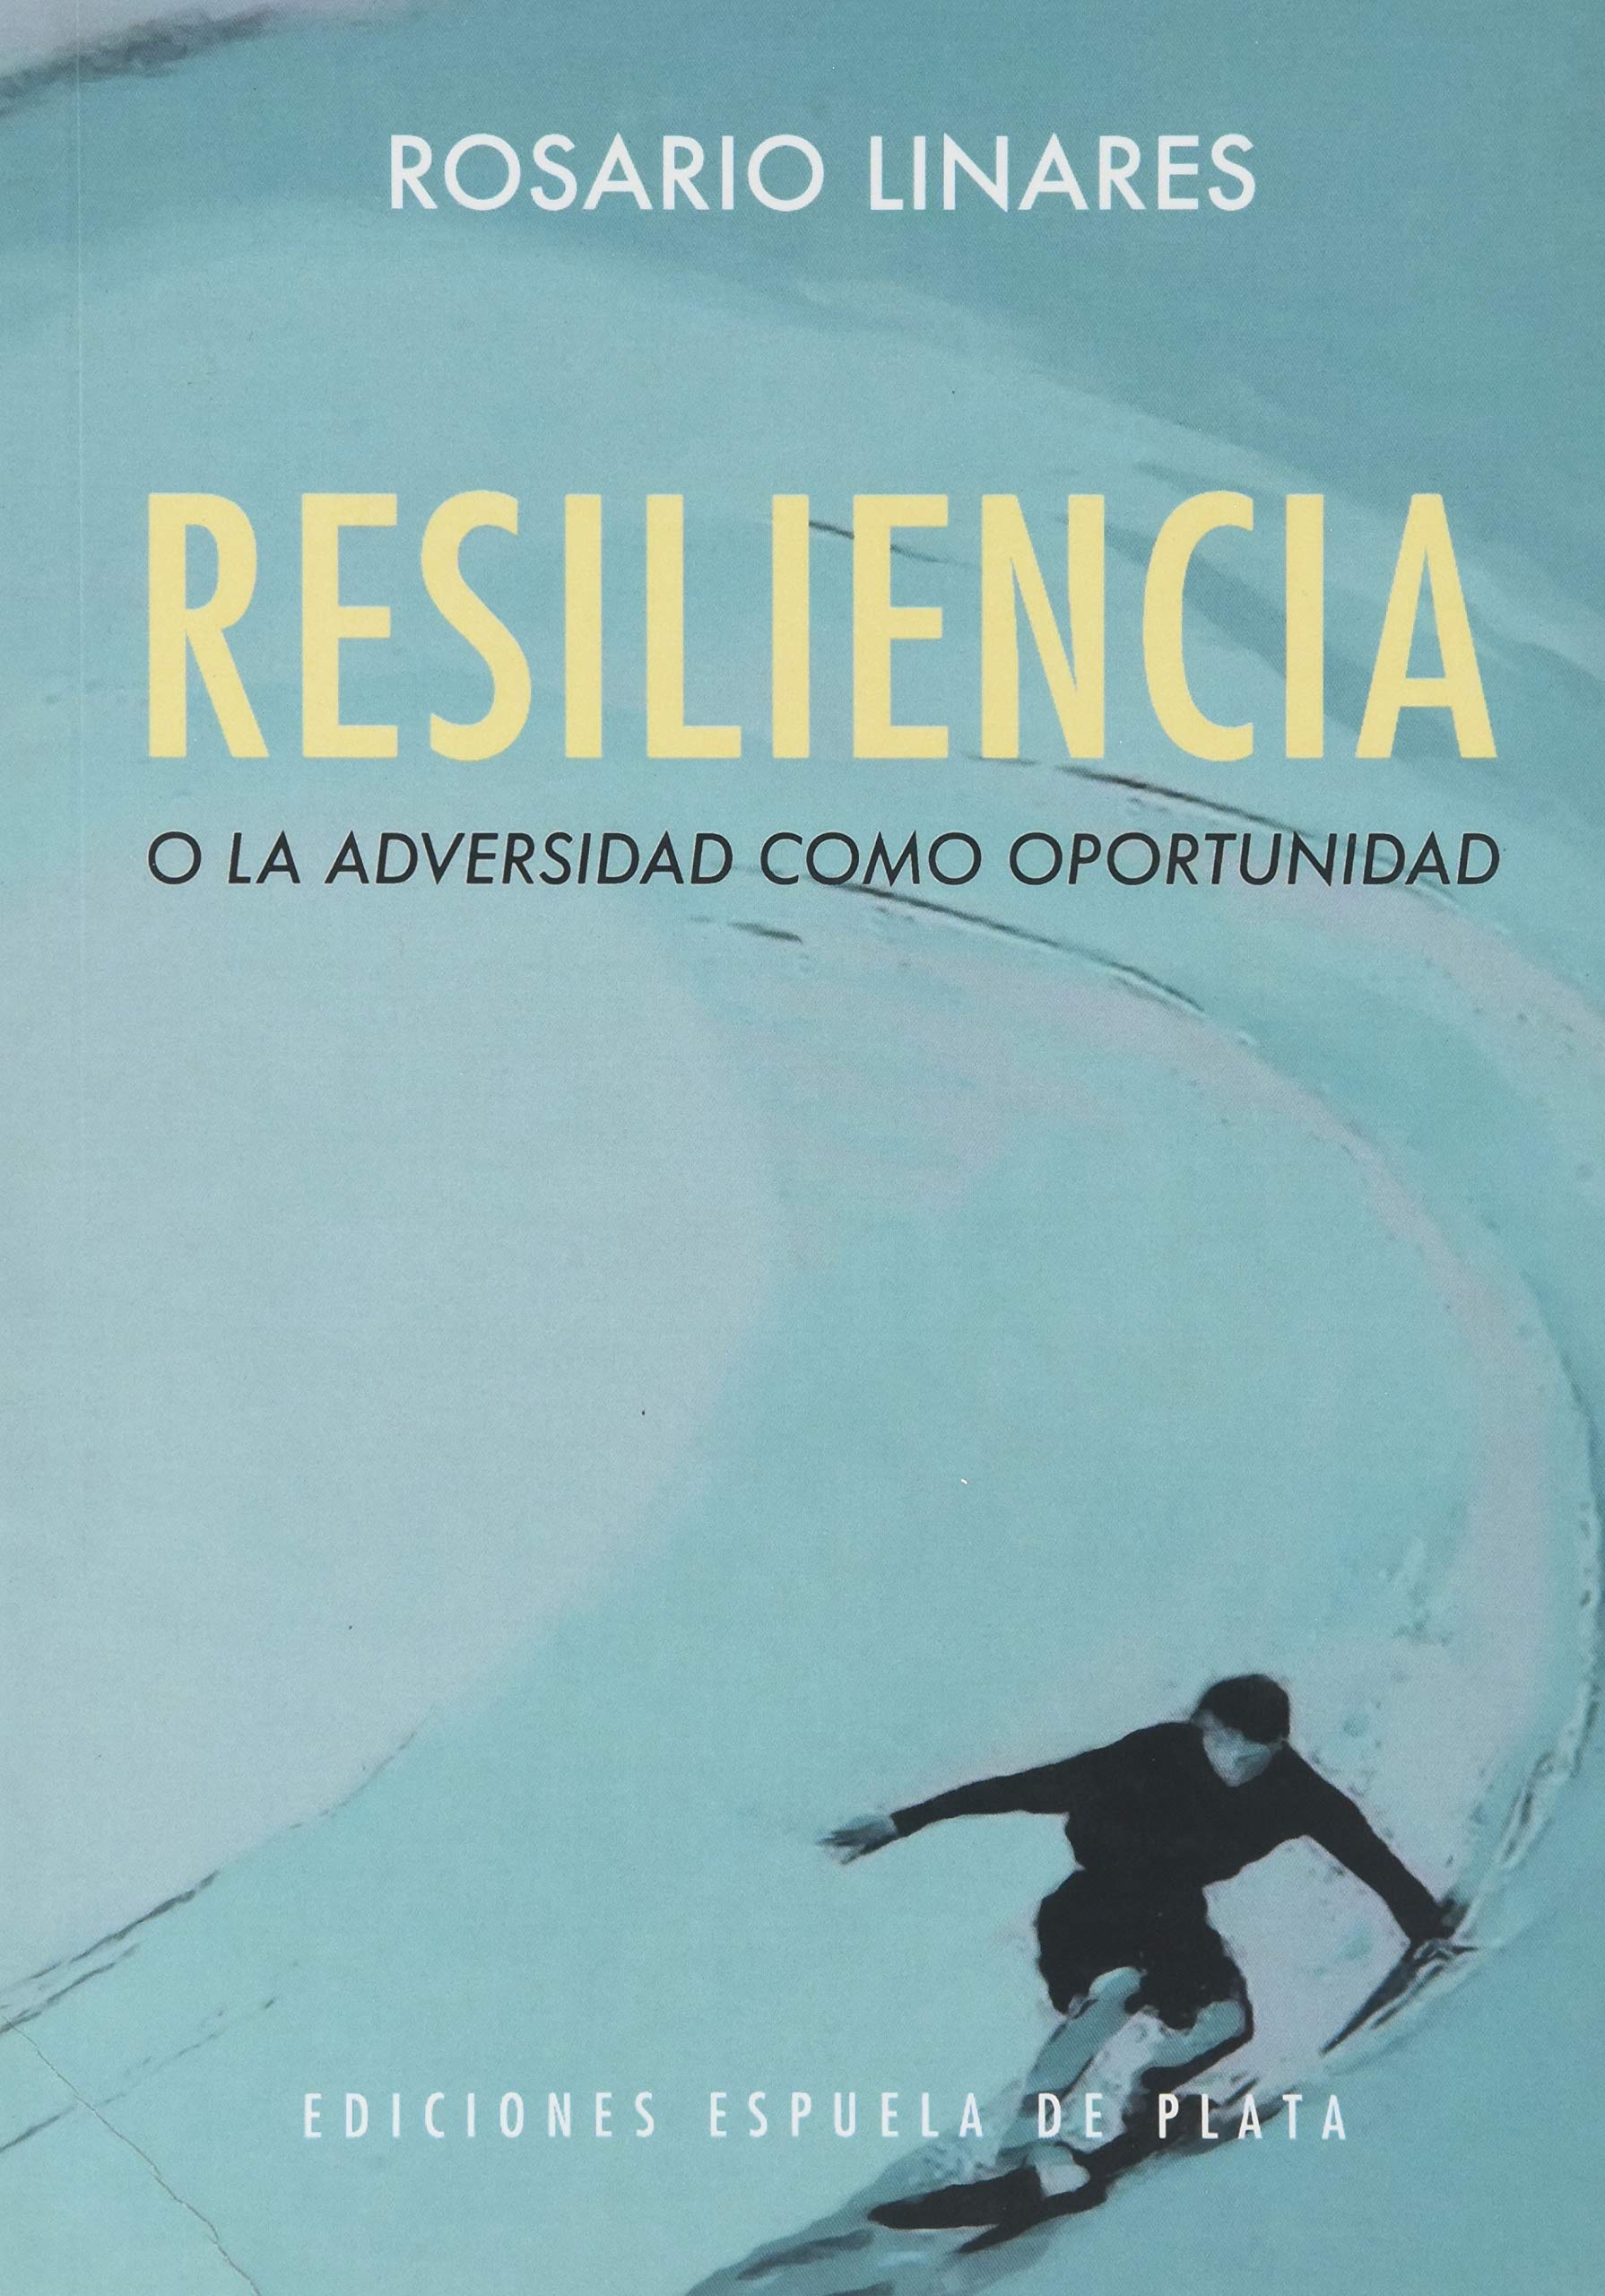 Los mejores libros sobre resiliencia: Resiliencia o adversidad como oportunidad